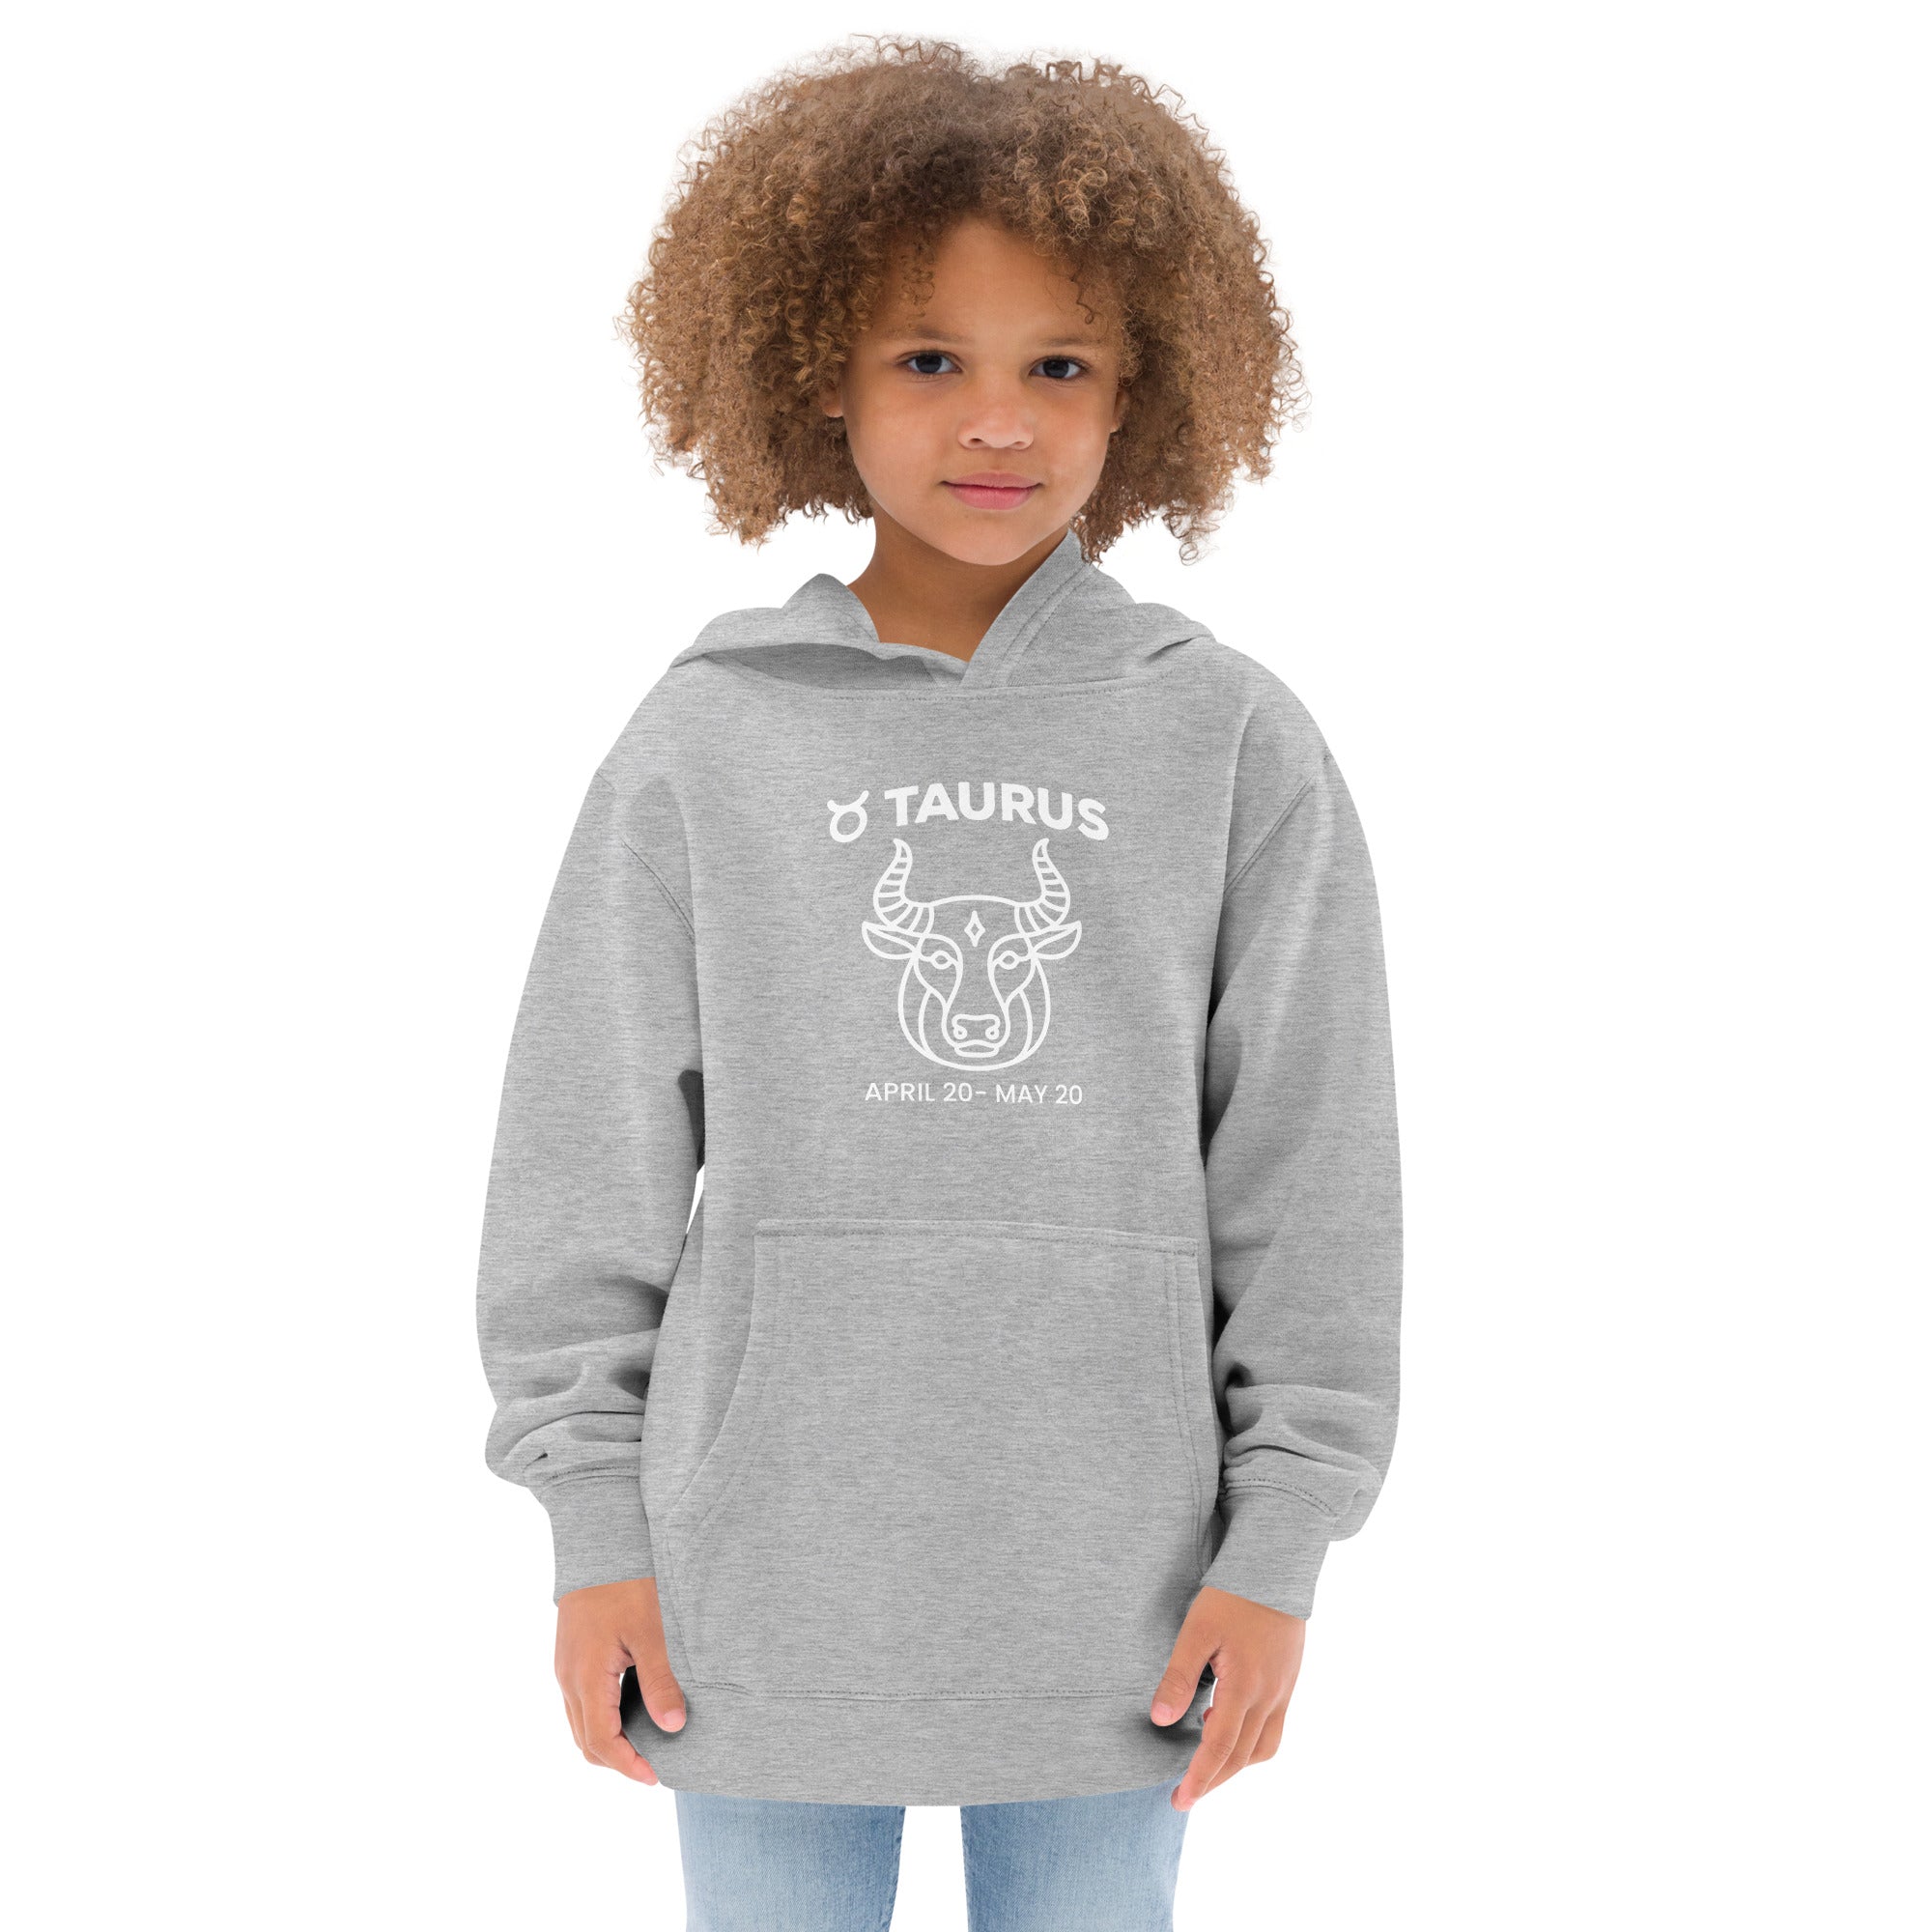 Kids Fleece Hoodie | toddler hoodies girl